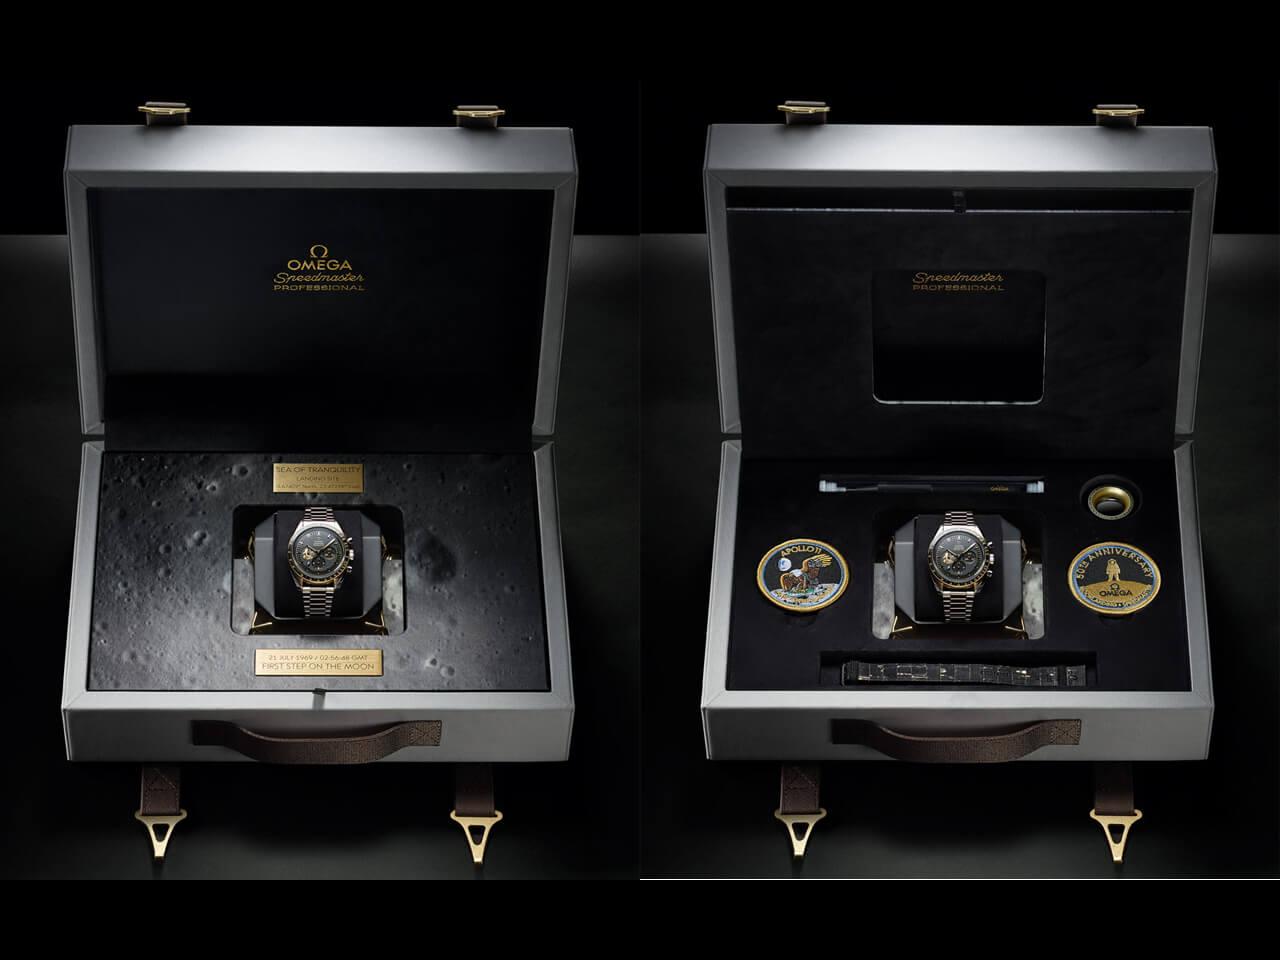 オメガスピードマスター アポロ11号 50周年記念限定モデル 310.20.42.50.01.001 特別仕様のボックス